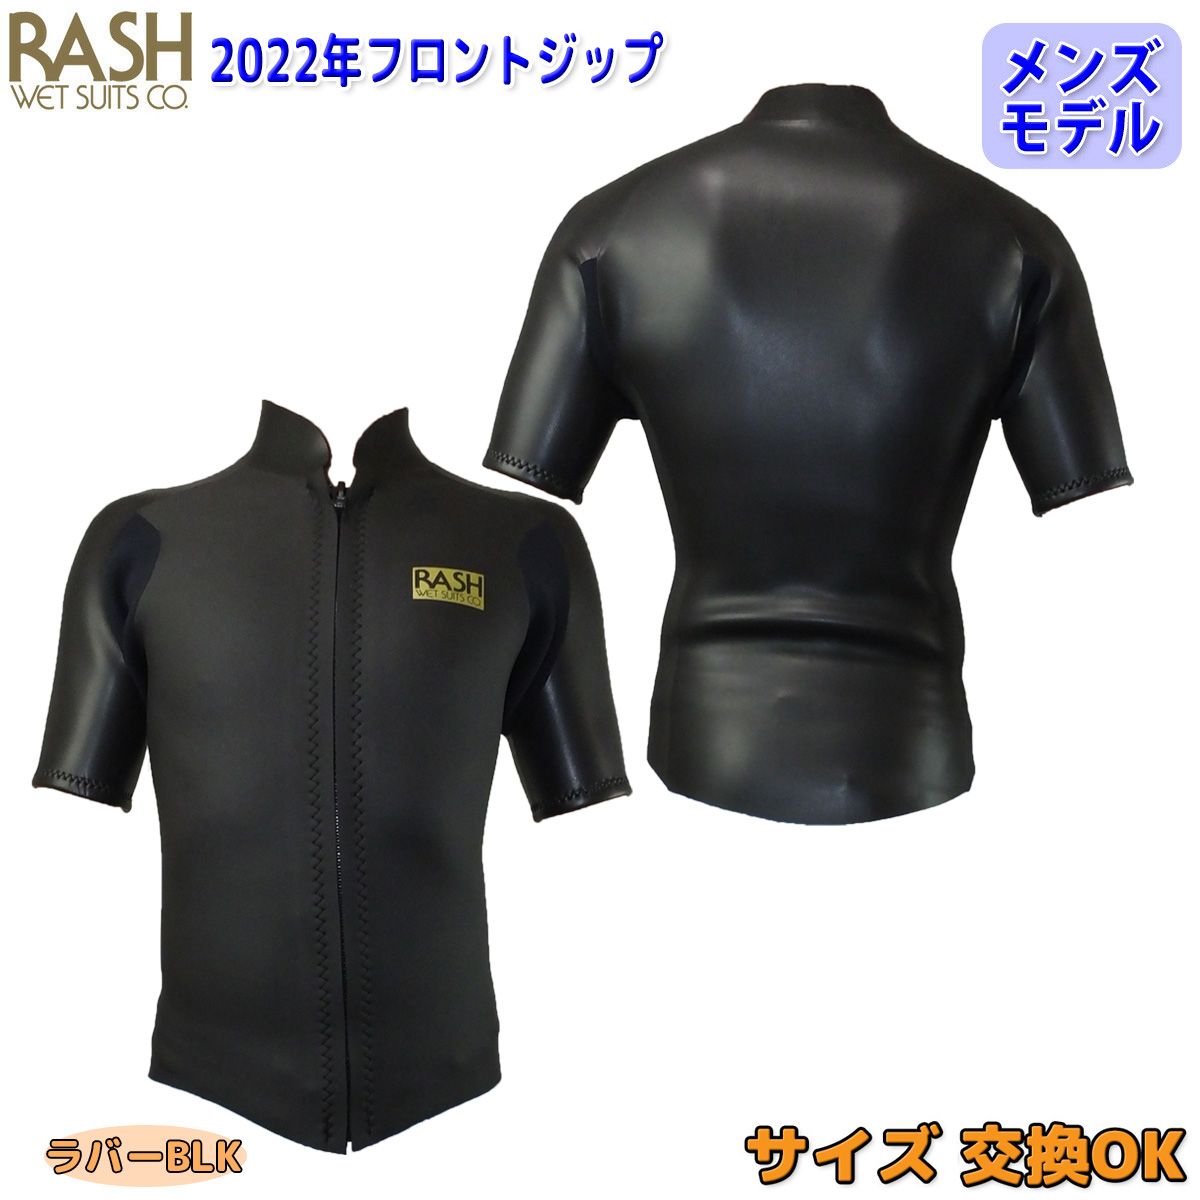 ウェットスーツ タッパー サーフィン ウエットスーツ rash 22 RASH 半袖タッパー フロントジップ 2mm メンズ バリュー  2022年春夏モデル 日本正規品 サーフィン